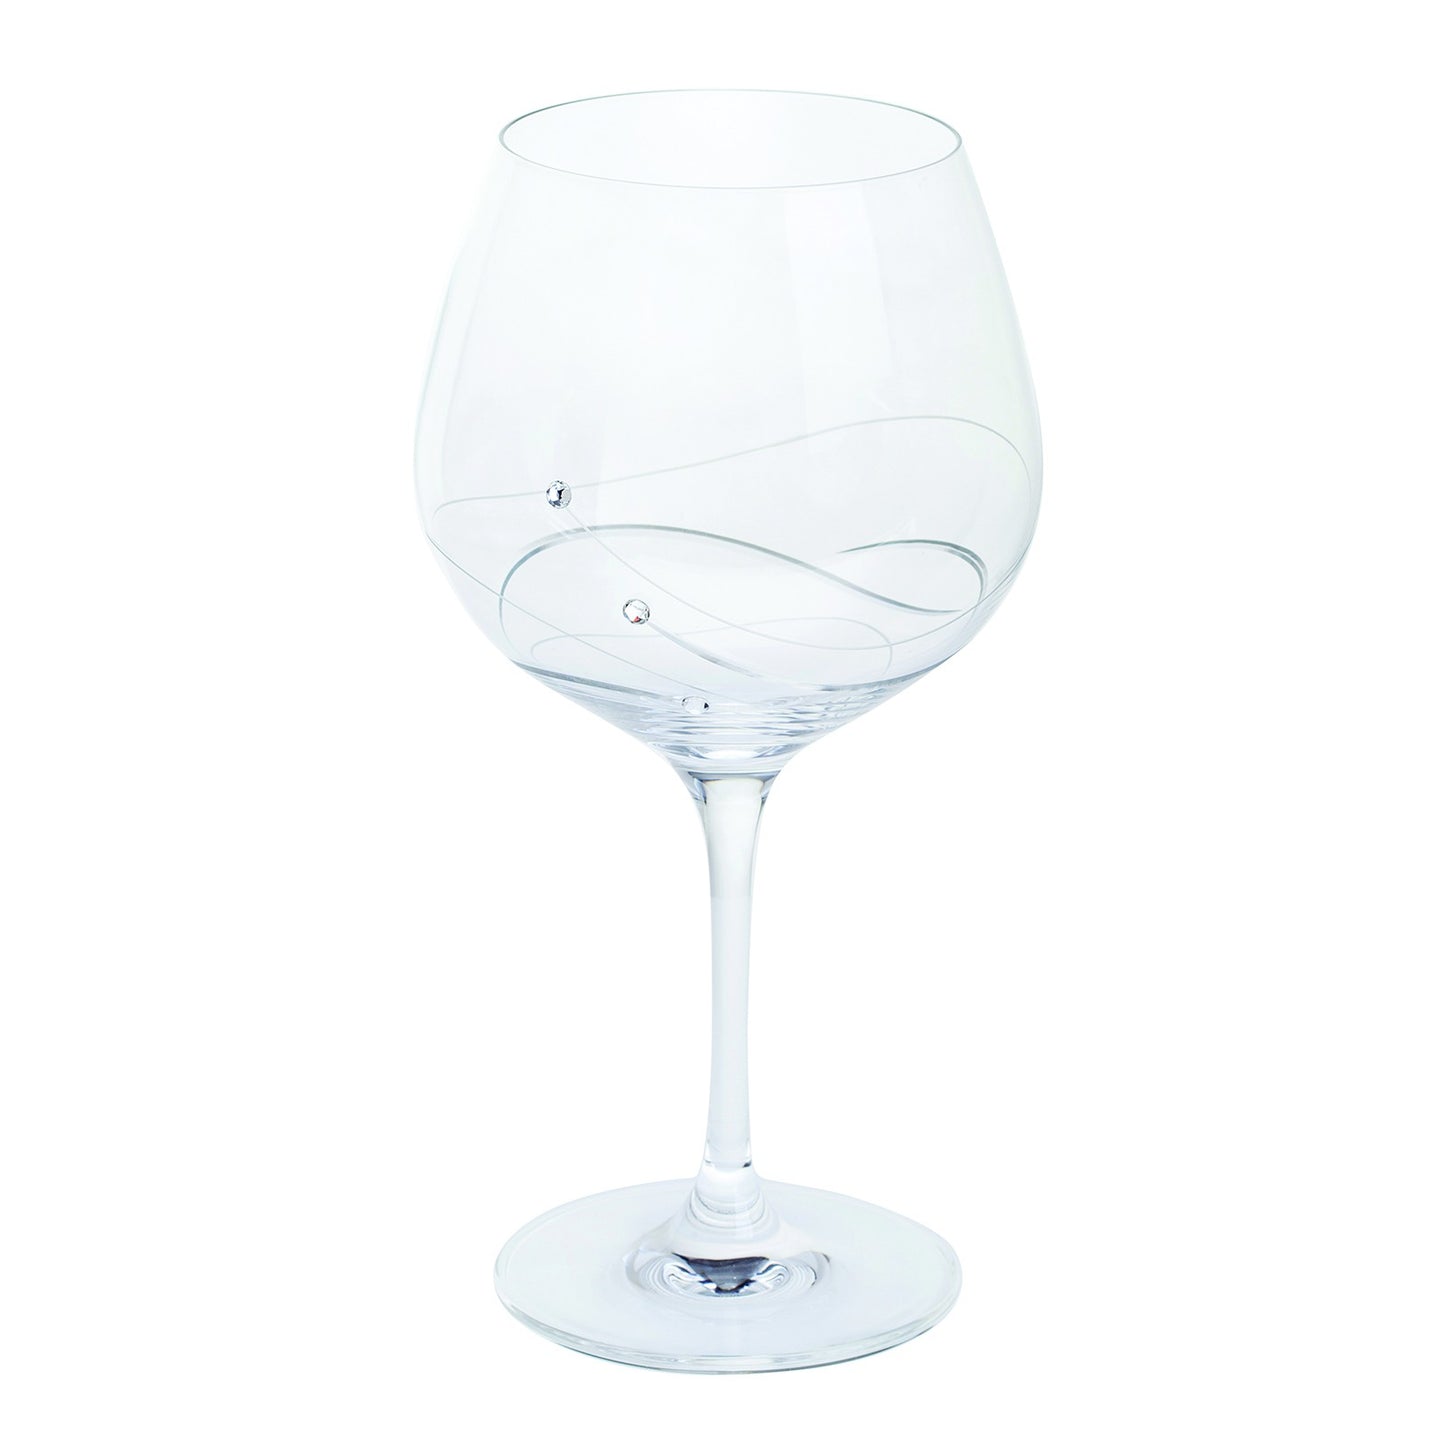 Glitz Gin and Tonic Copa Glass